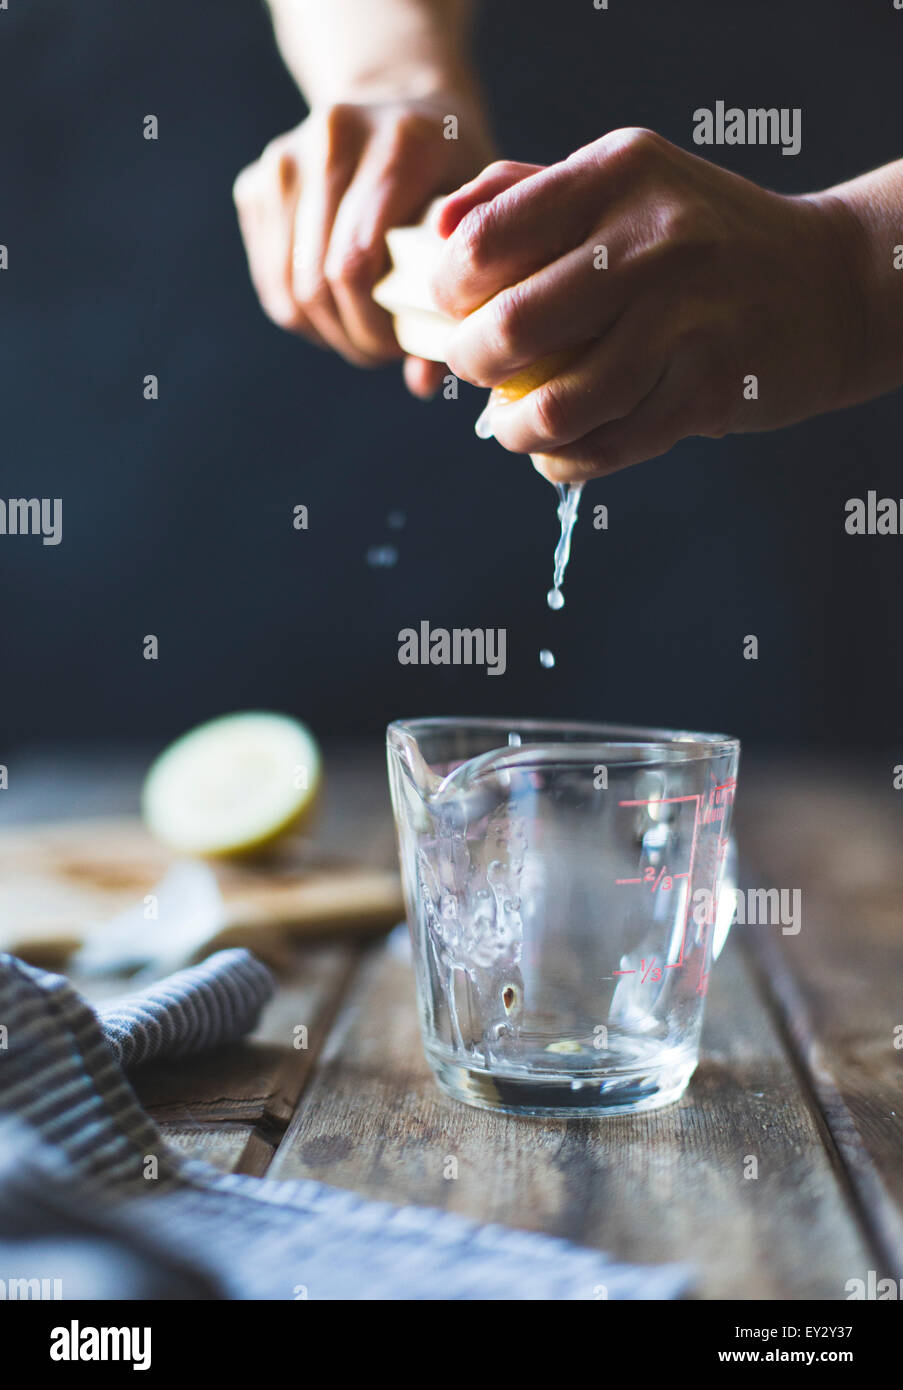 Exprimir el zumo de limón en una jarra medidora. Foto de stock